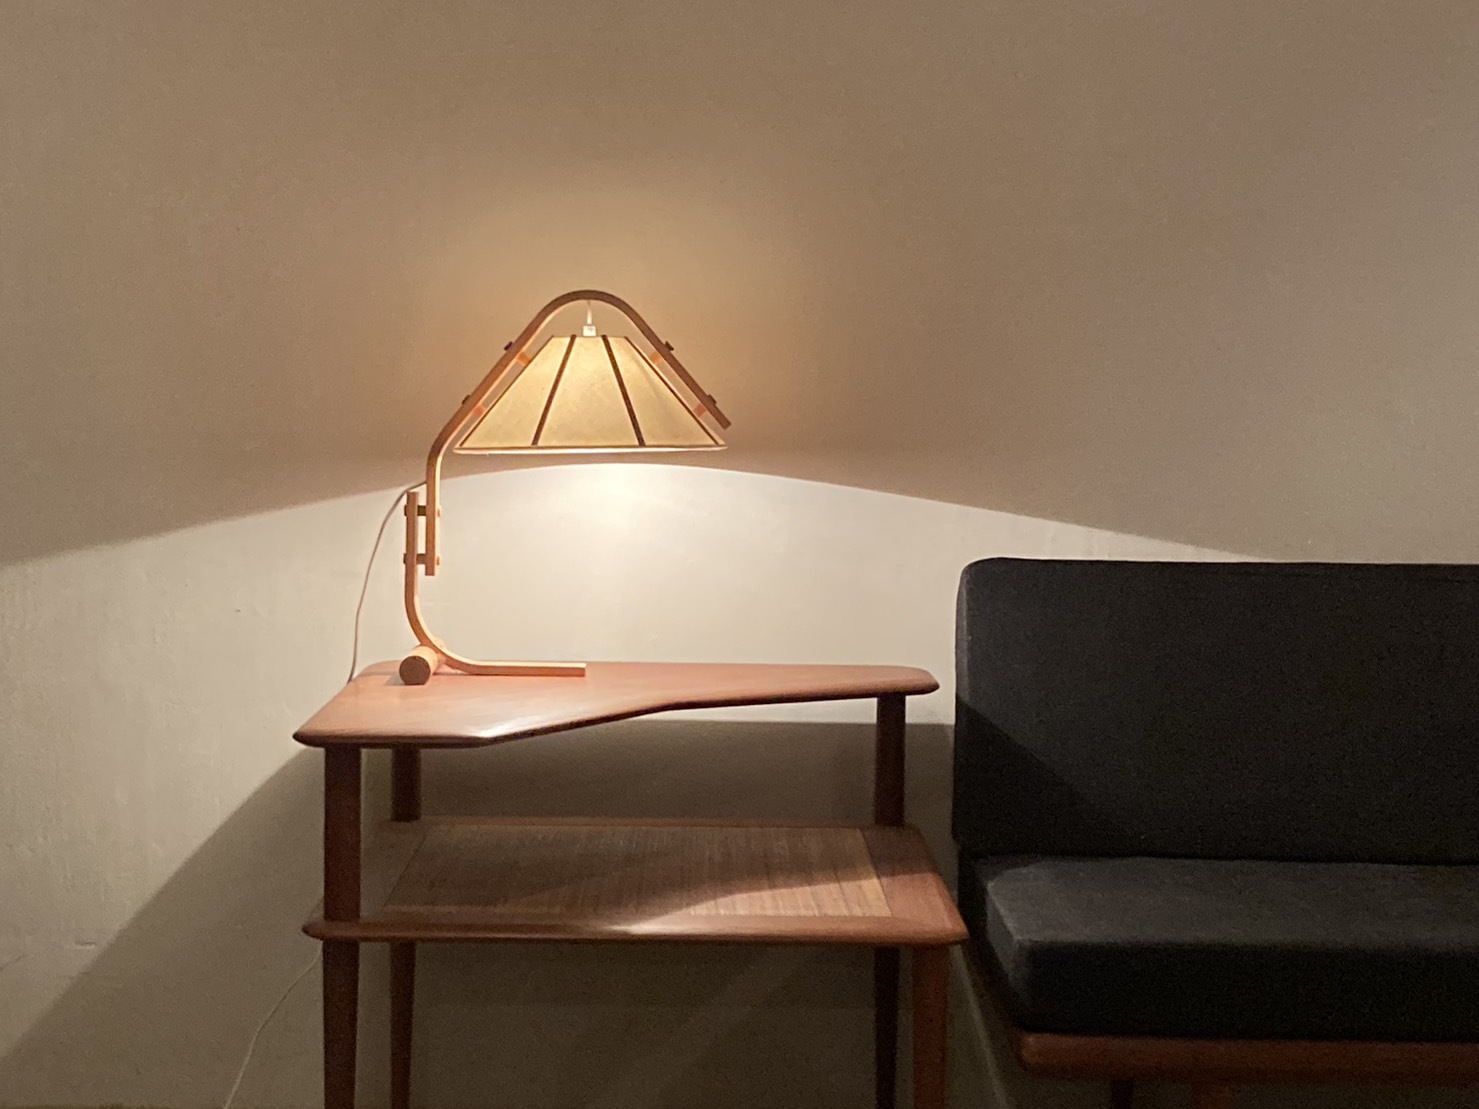 『入荷 Jan Wickelgren Desk Lamp(Sold)』_c0211307_15425015.jpg